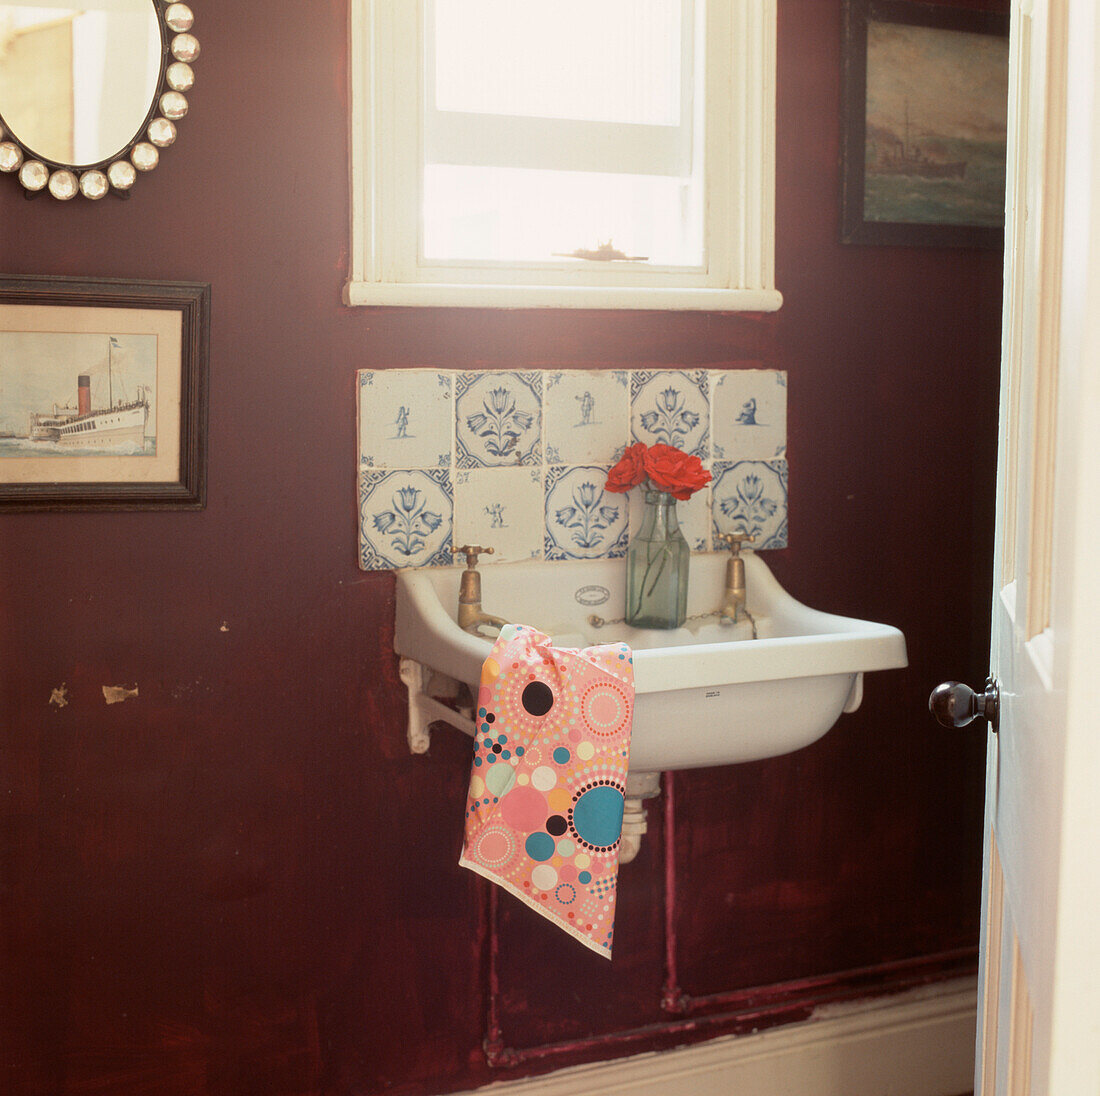 Waschraum im Erdgeschoss mit altem Waschbecken, gefliestem Spritzschutz und dunkelviolett gestrichenen Wänden